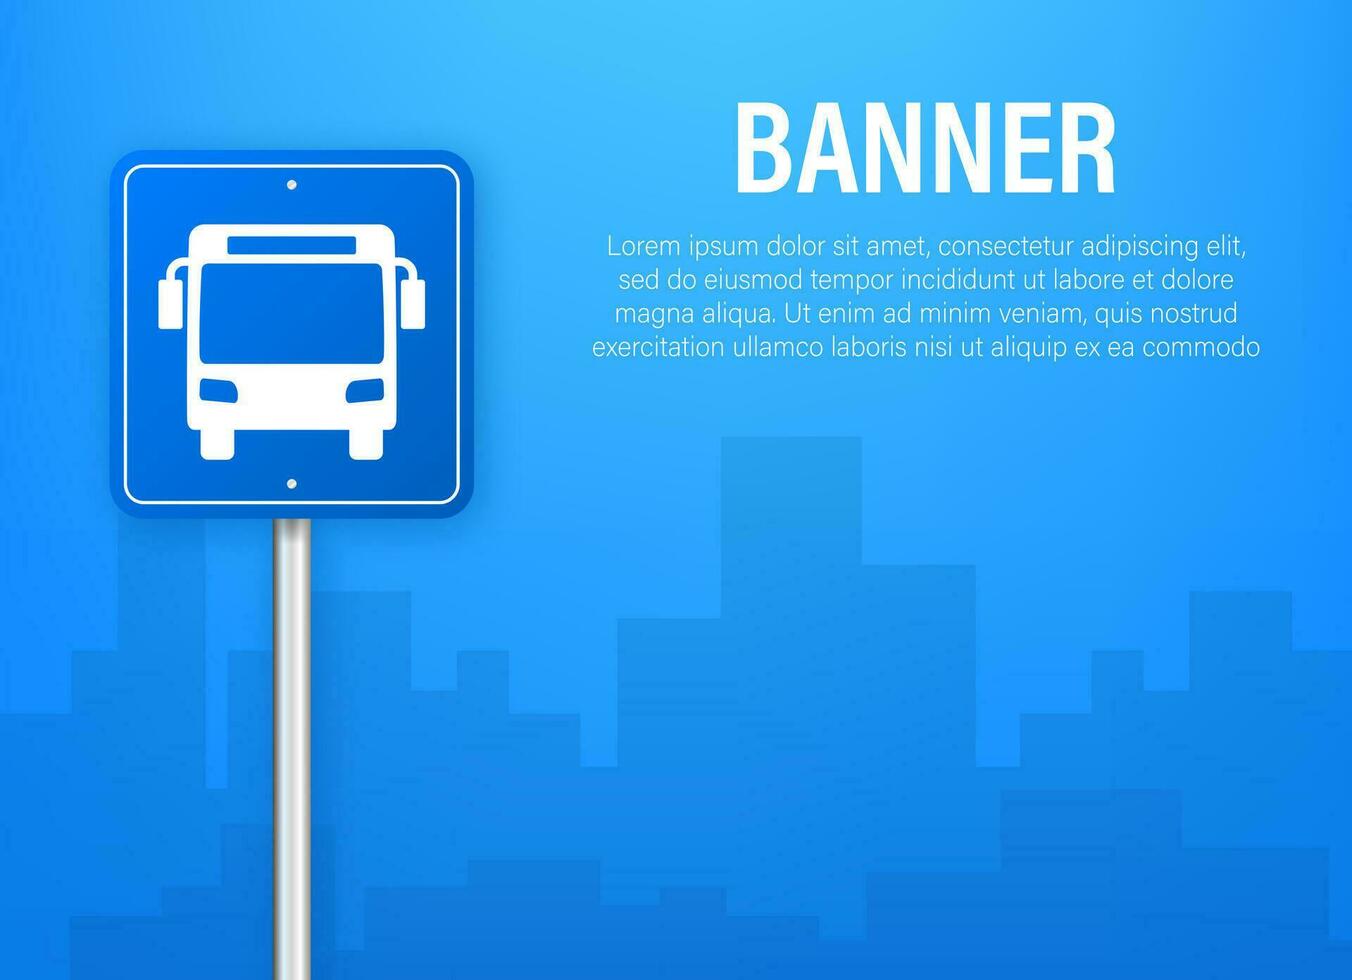 blu bandiera con autobus stazione. vettore linea illustrazione. vettore piatto illustrazione.